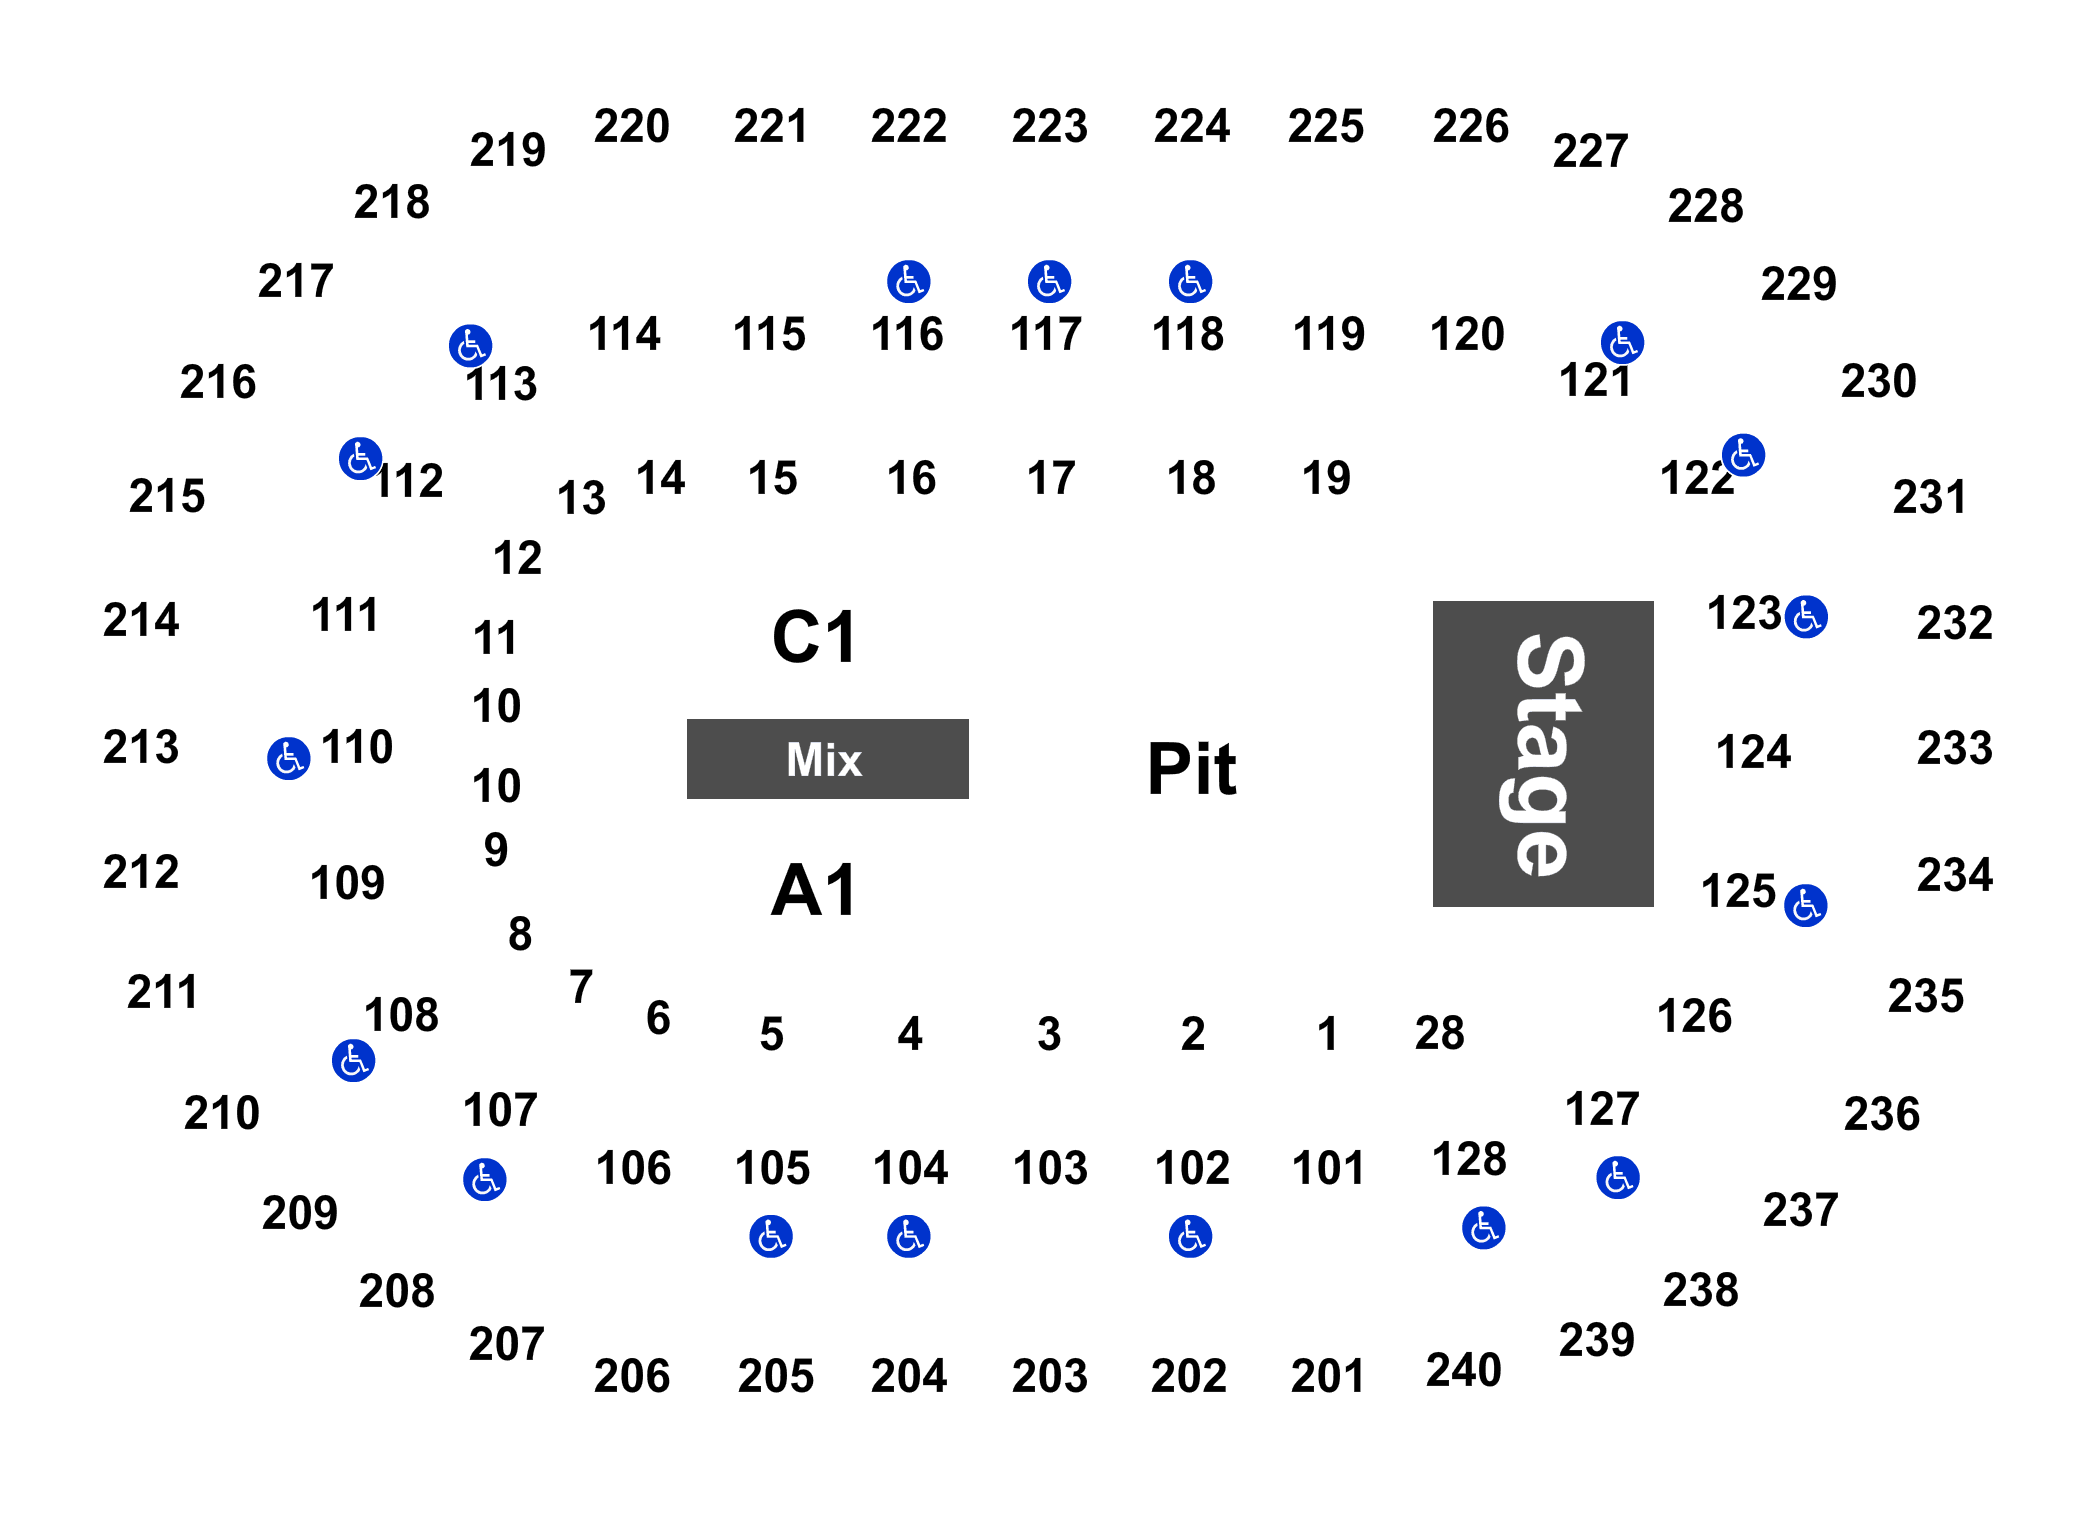 Veterans Memorial Coliseum Virtual Seating Chart